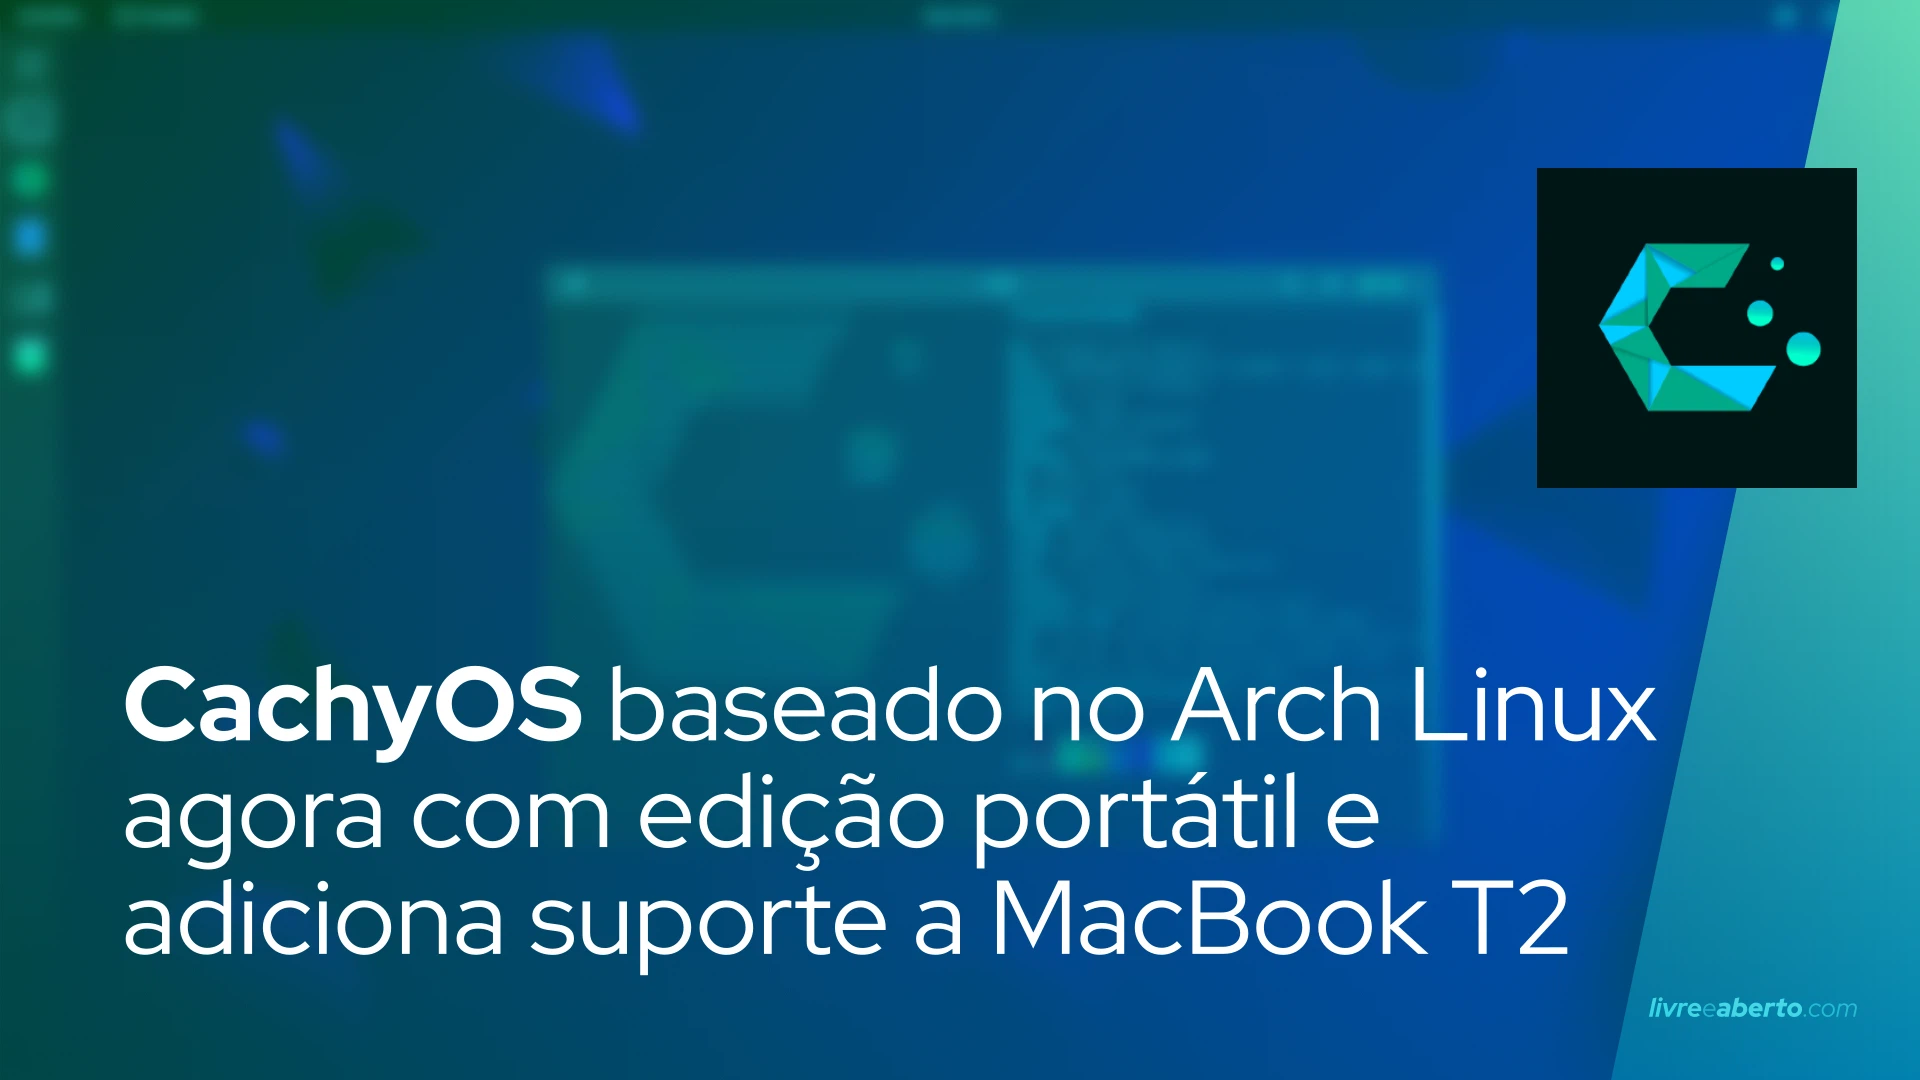 CachyOS baseado no Arch Linux agora com edição portátil e adiciona suporte a MacBook T2